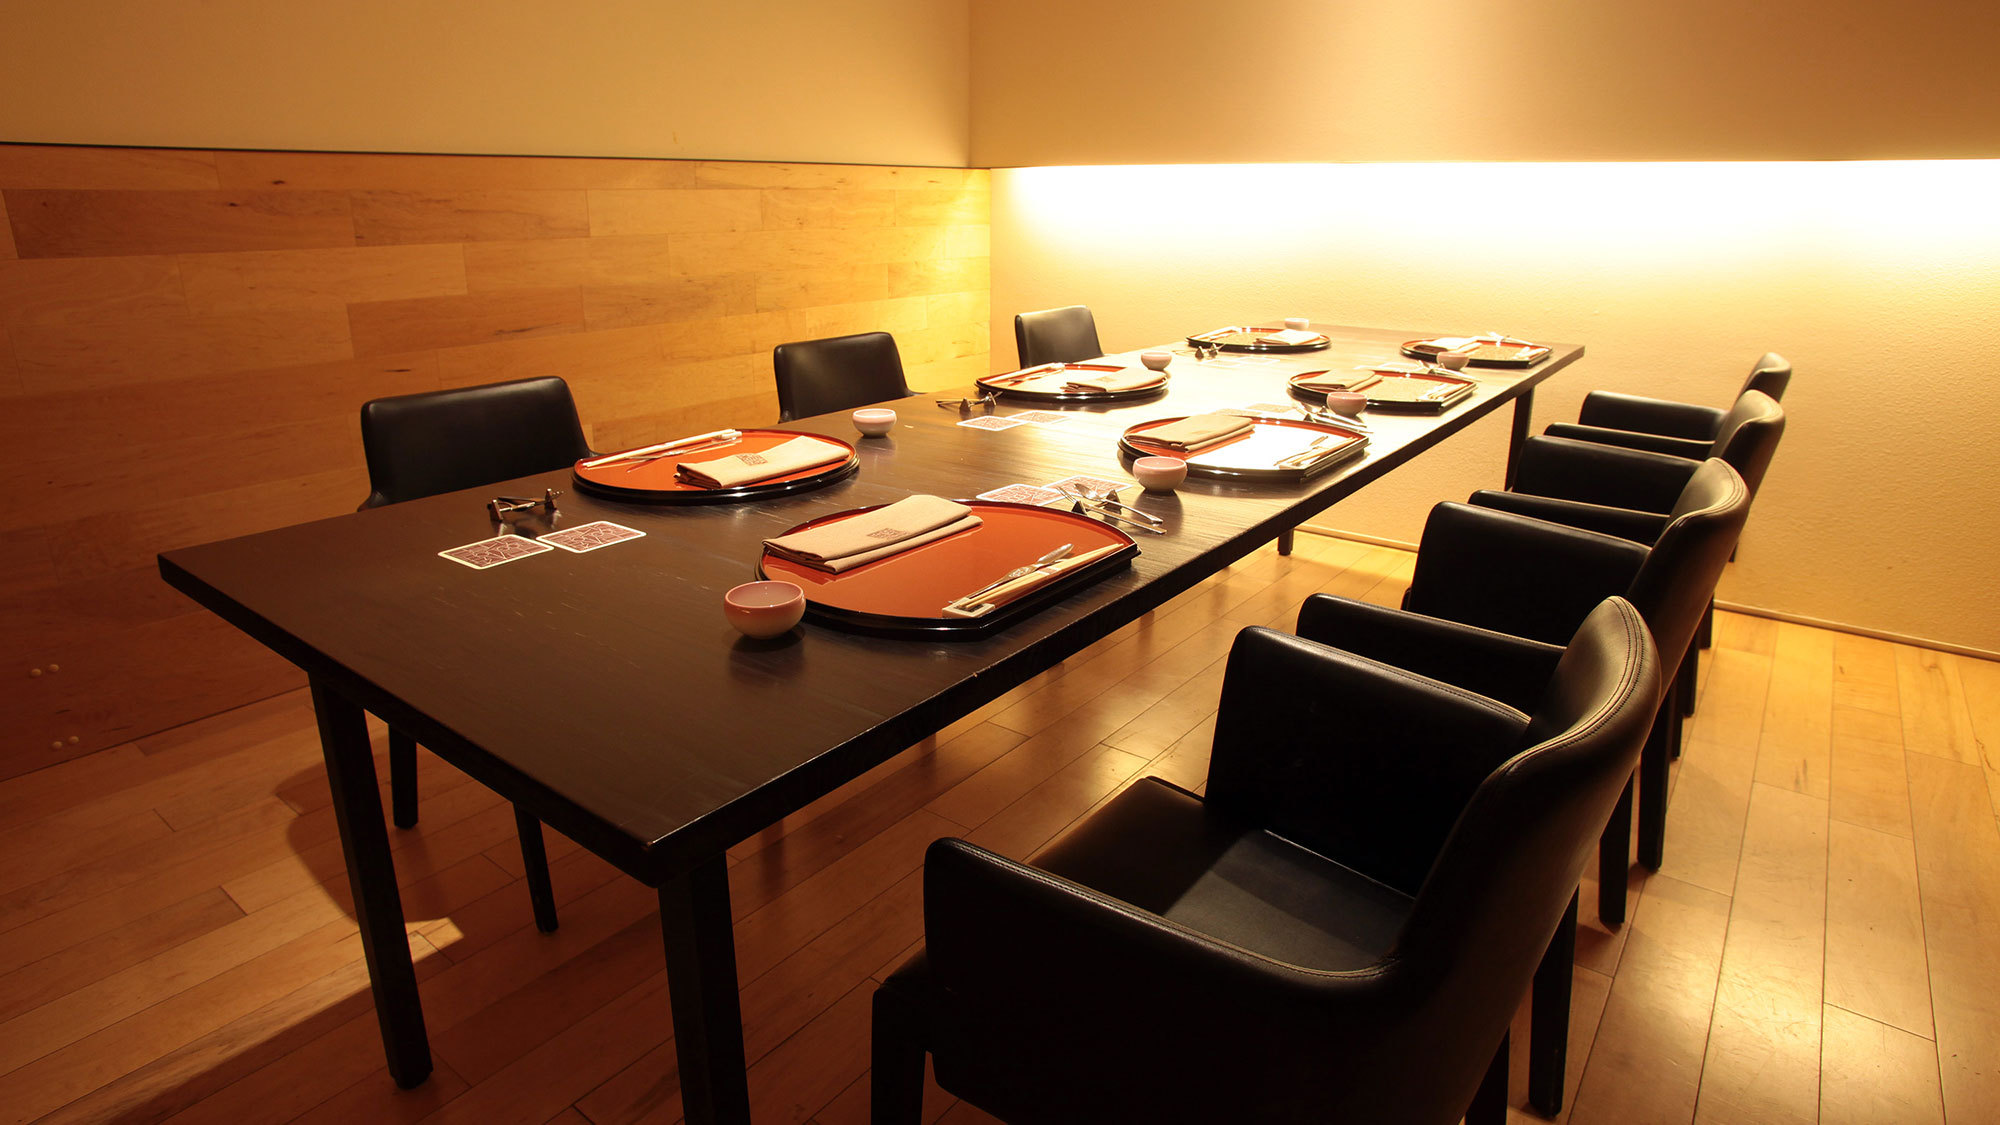 【食事処SHIOSAI】コチラの会場では、8名様でもご用意できる広めの個室席がございます。